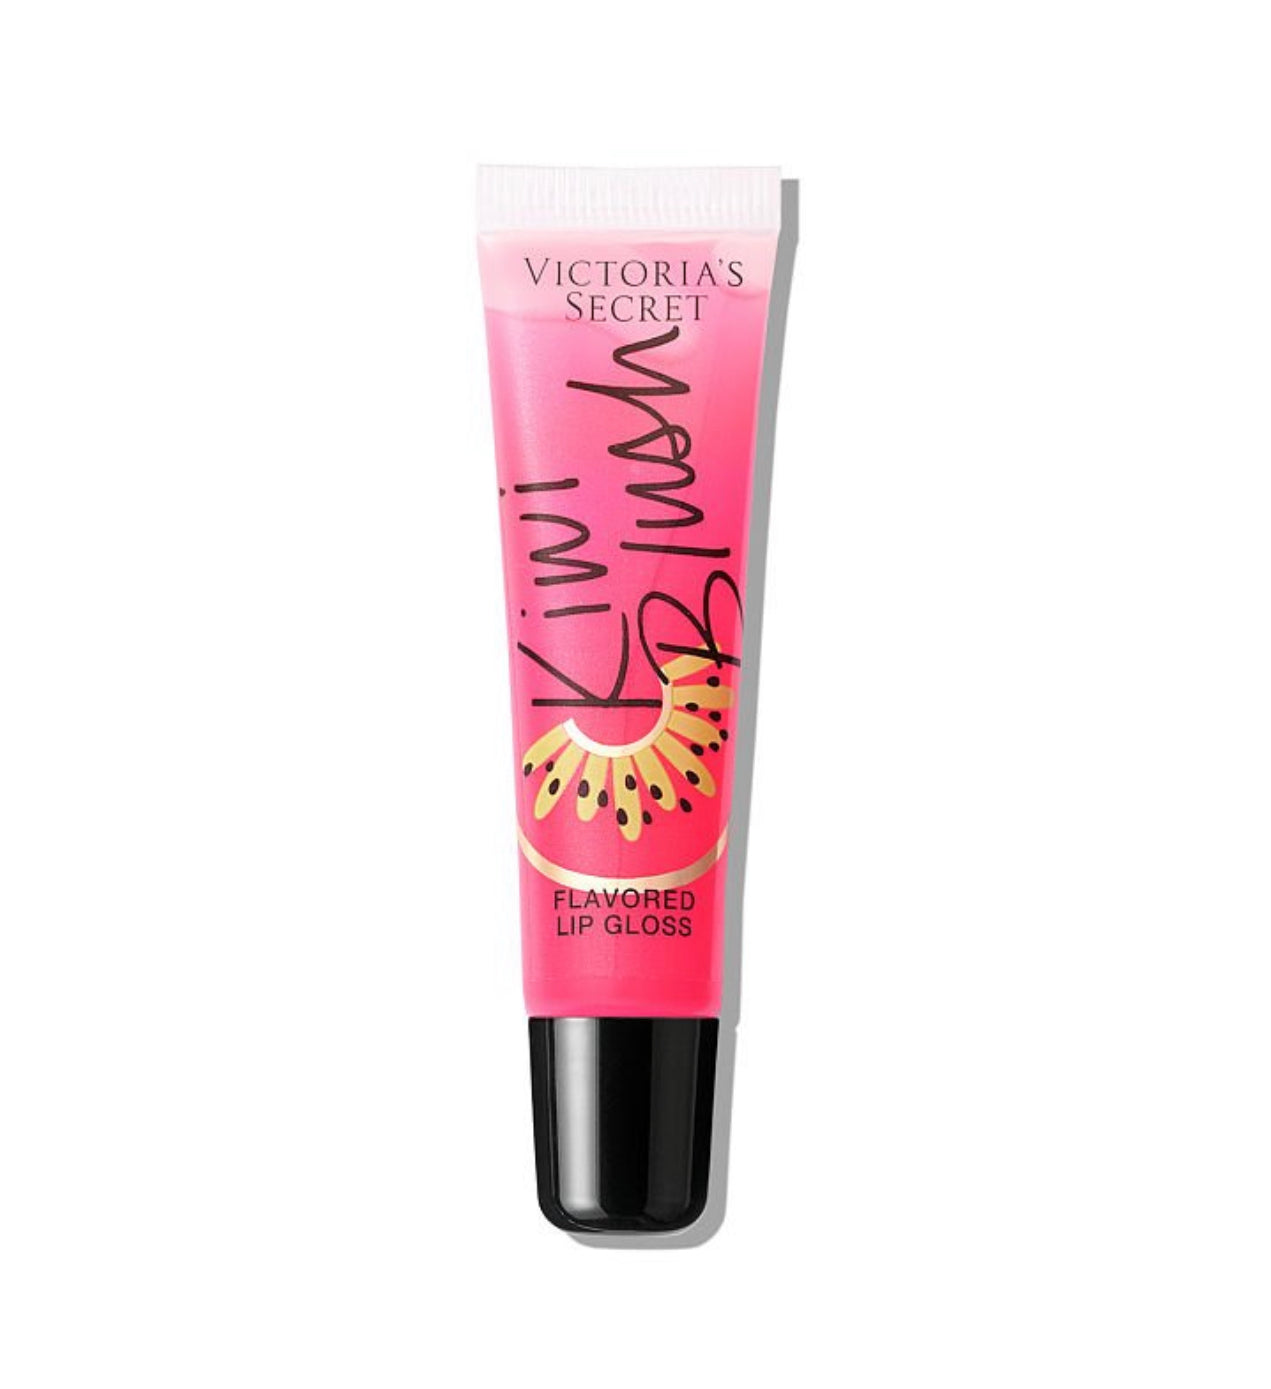 ,,Victoria’s Secret Kiwi Blush” Lip Gloss